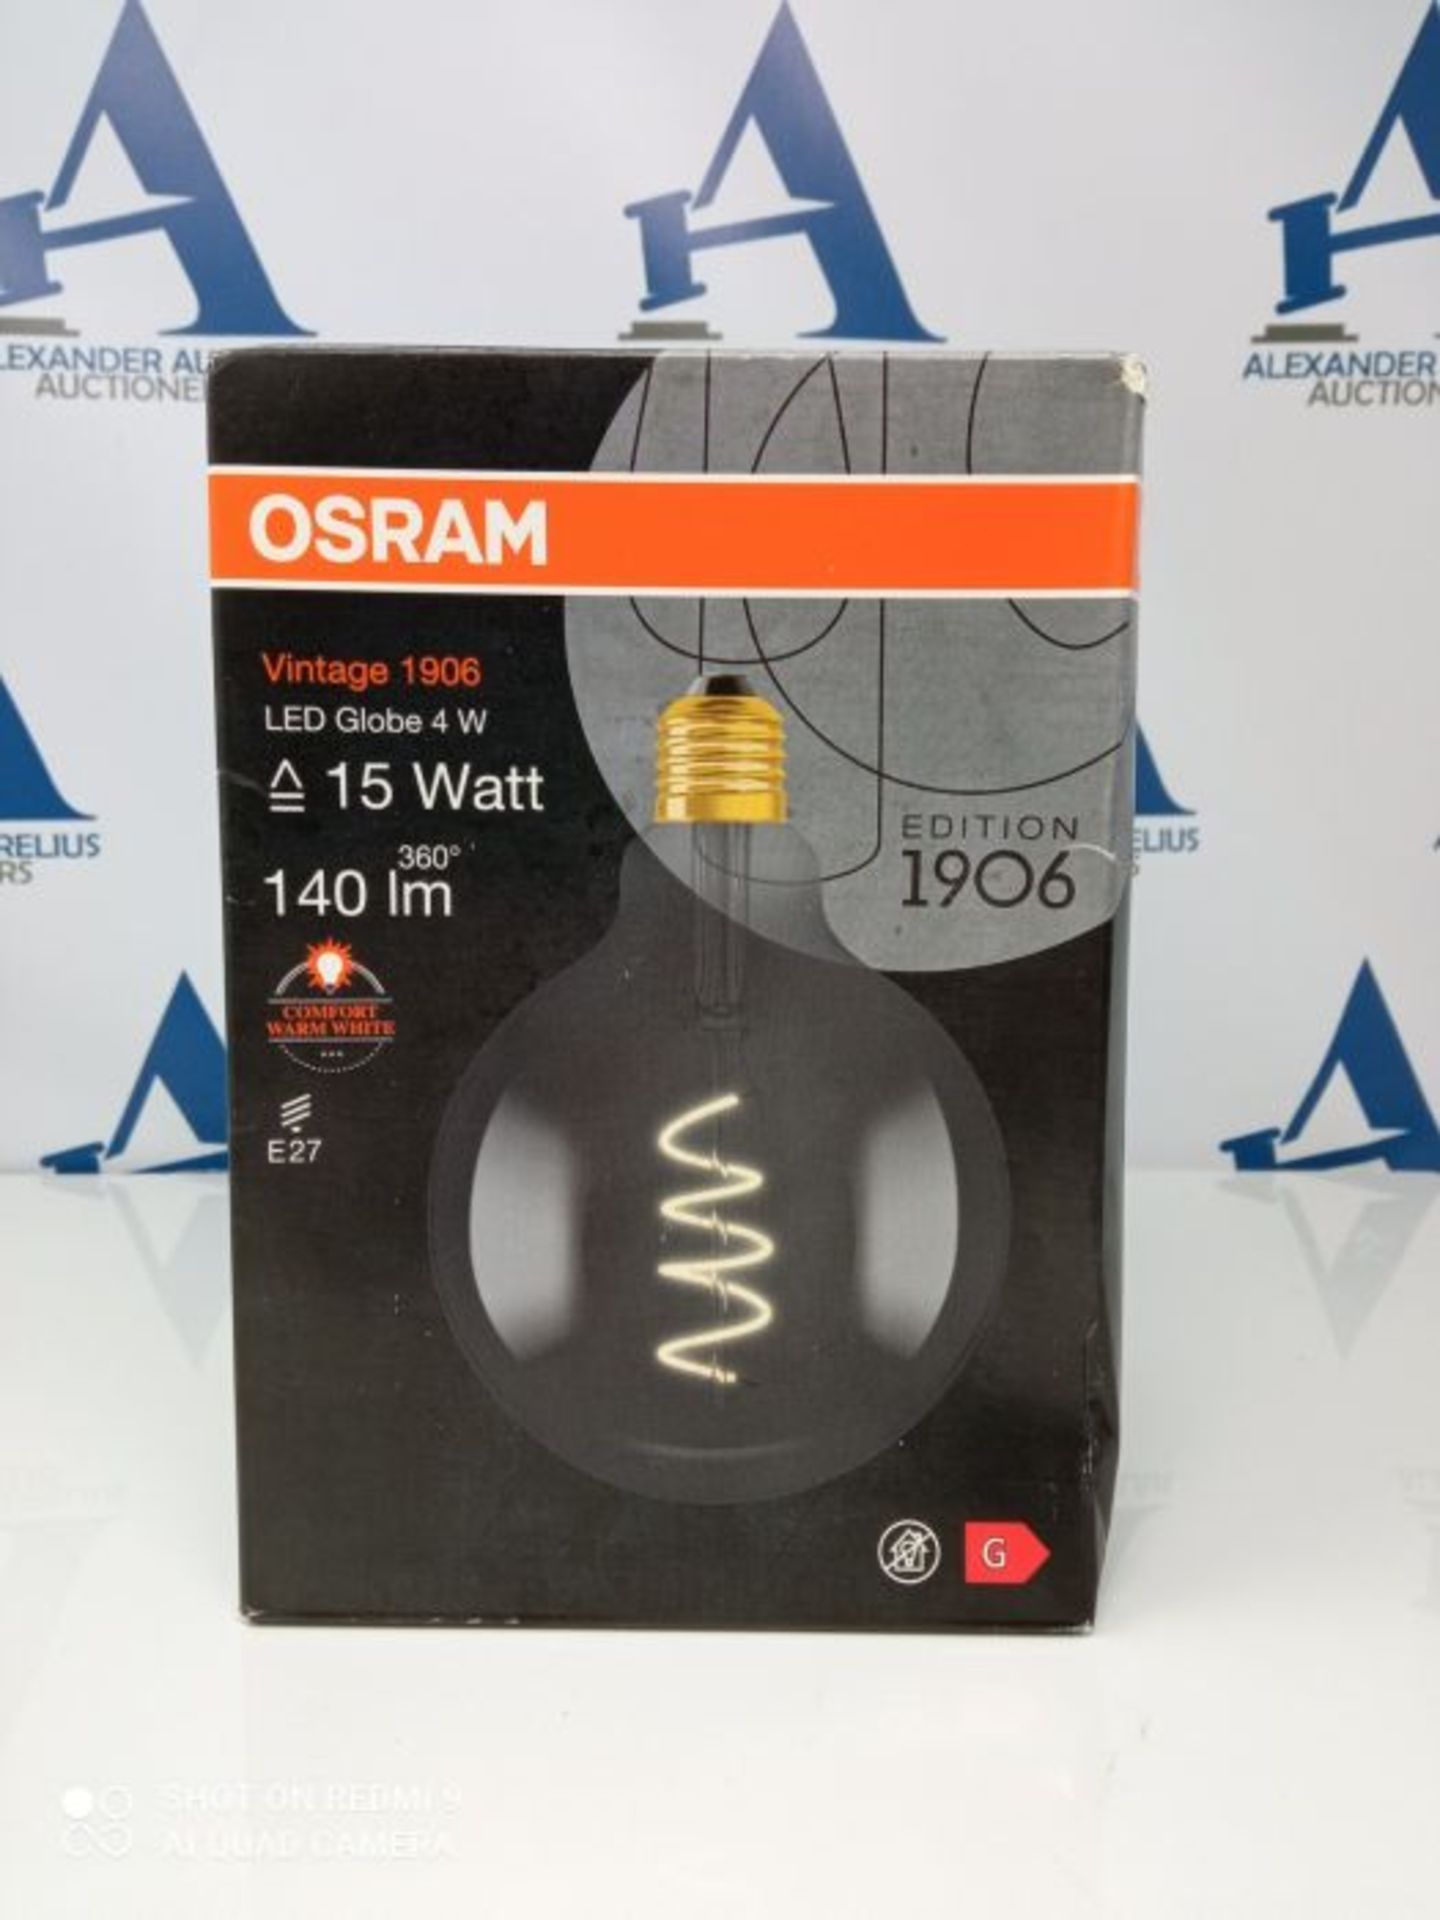 Osram Lampadina LED, 5 W, Luce Calda - Image 2 of 3